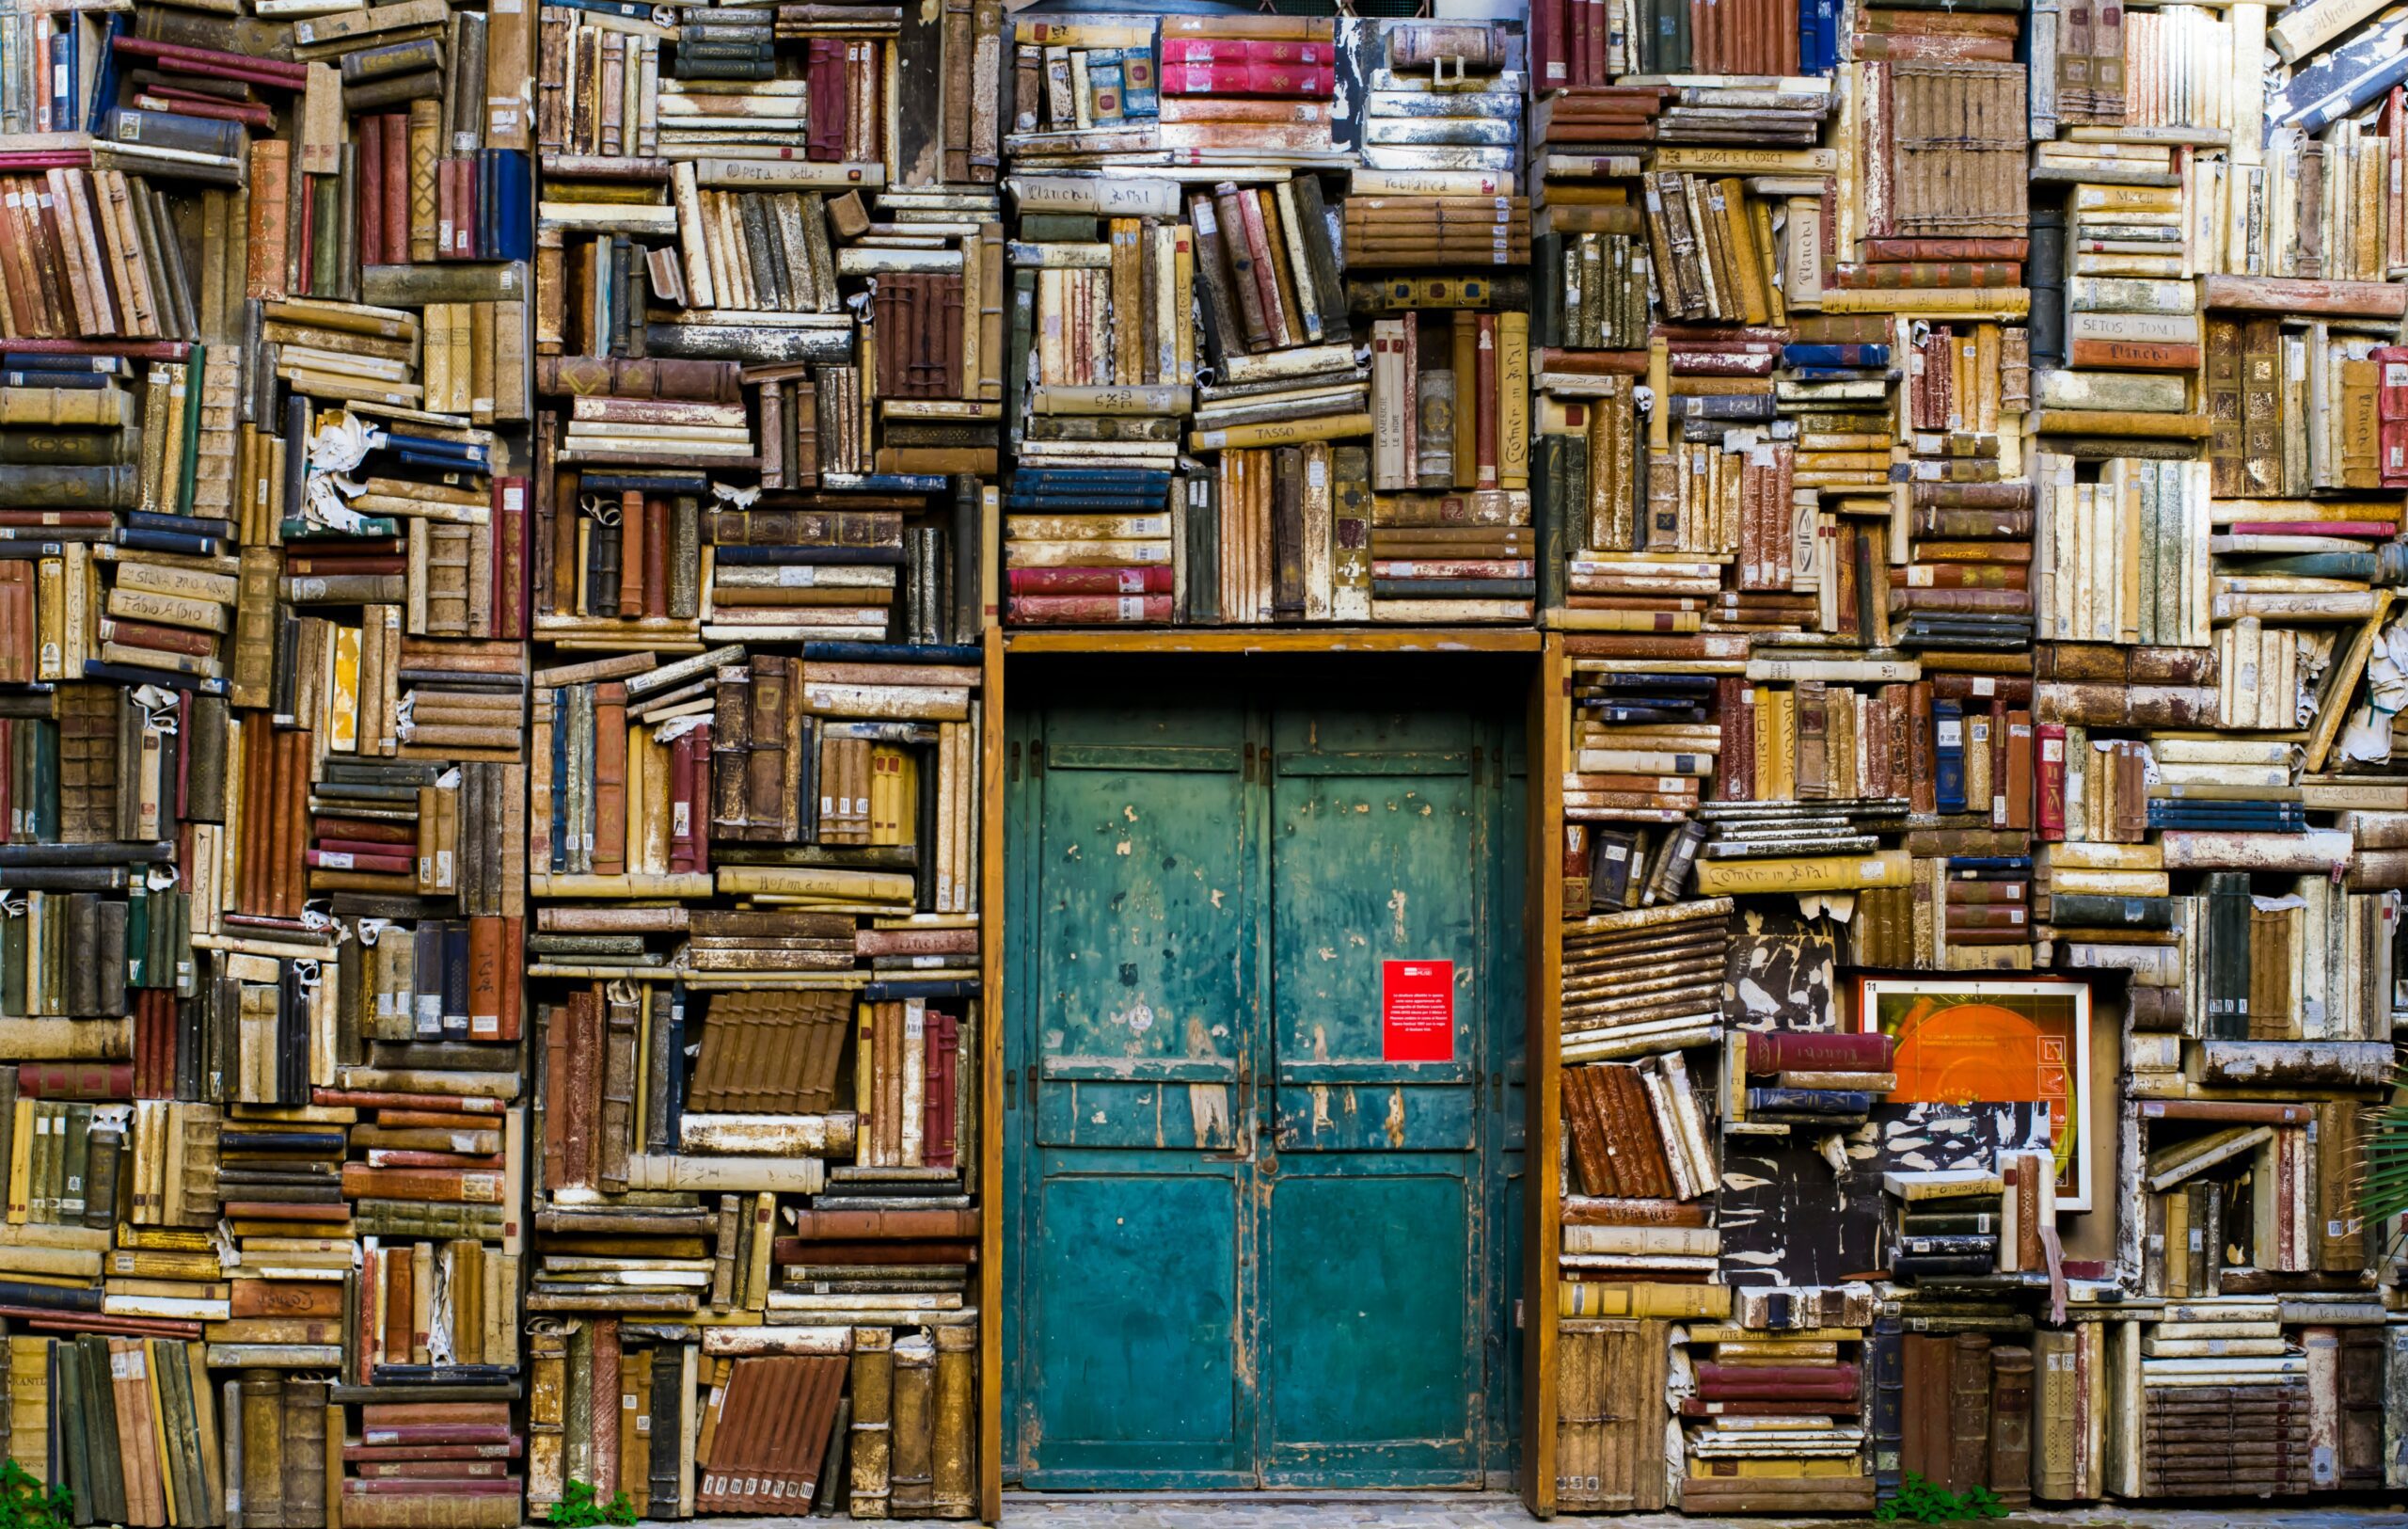 Venetian literature - Italian bookshop